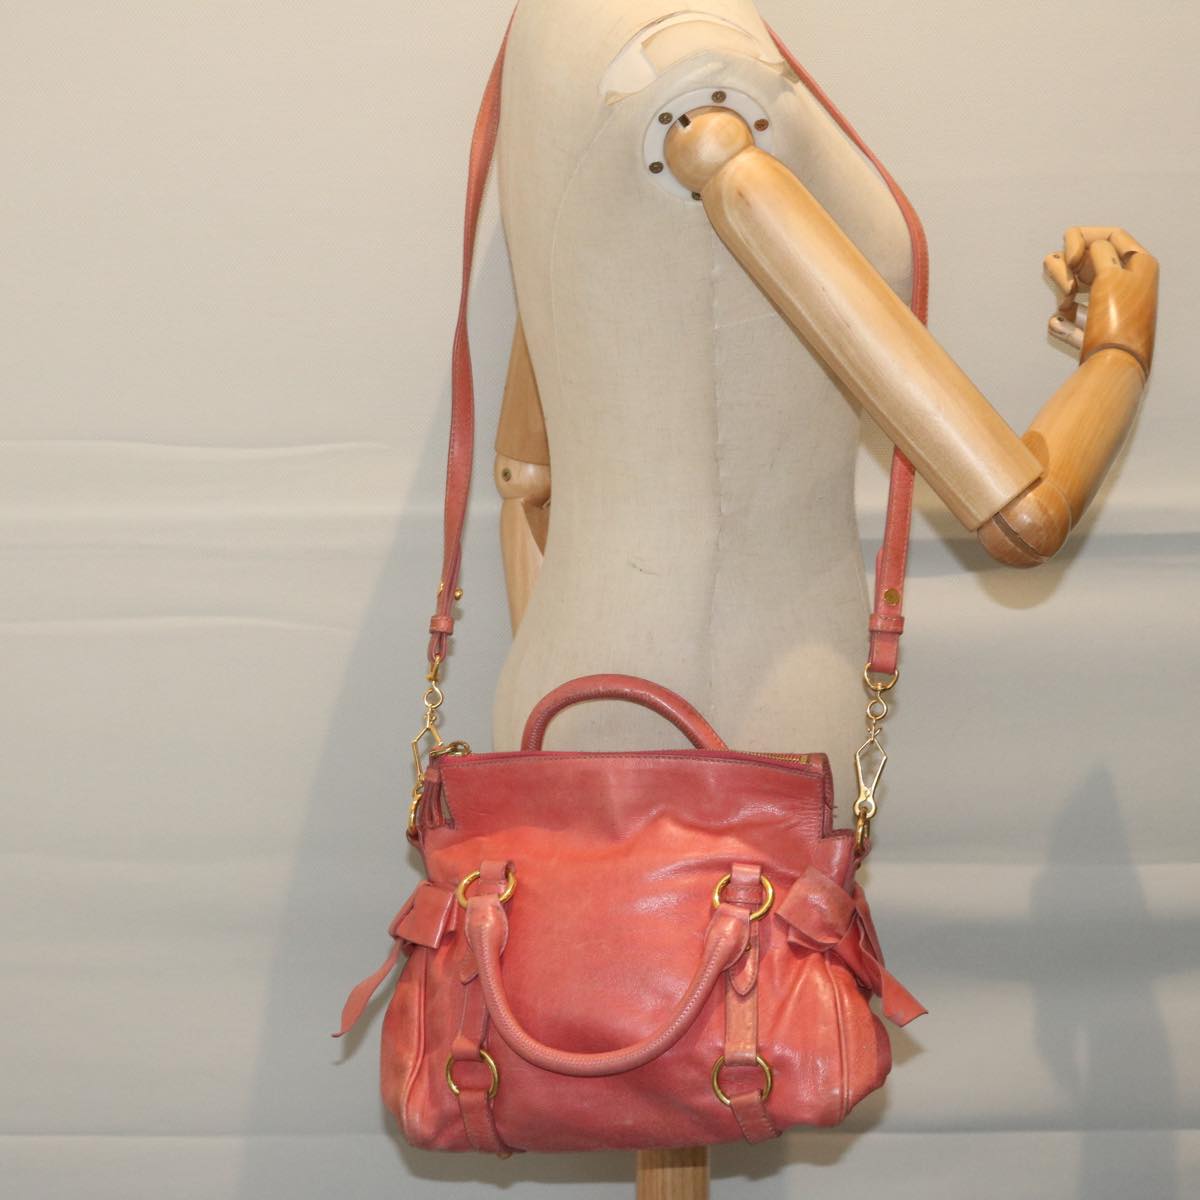 Miu Miu Hand Bag Leather 2way Pink Auth 63445